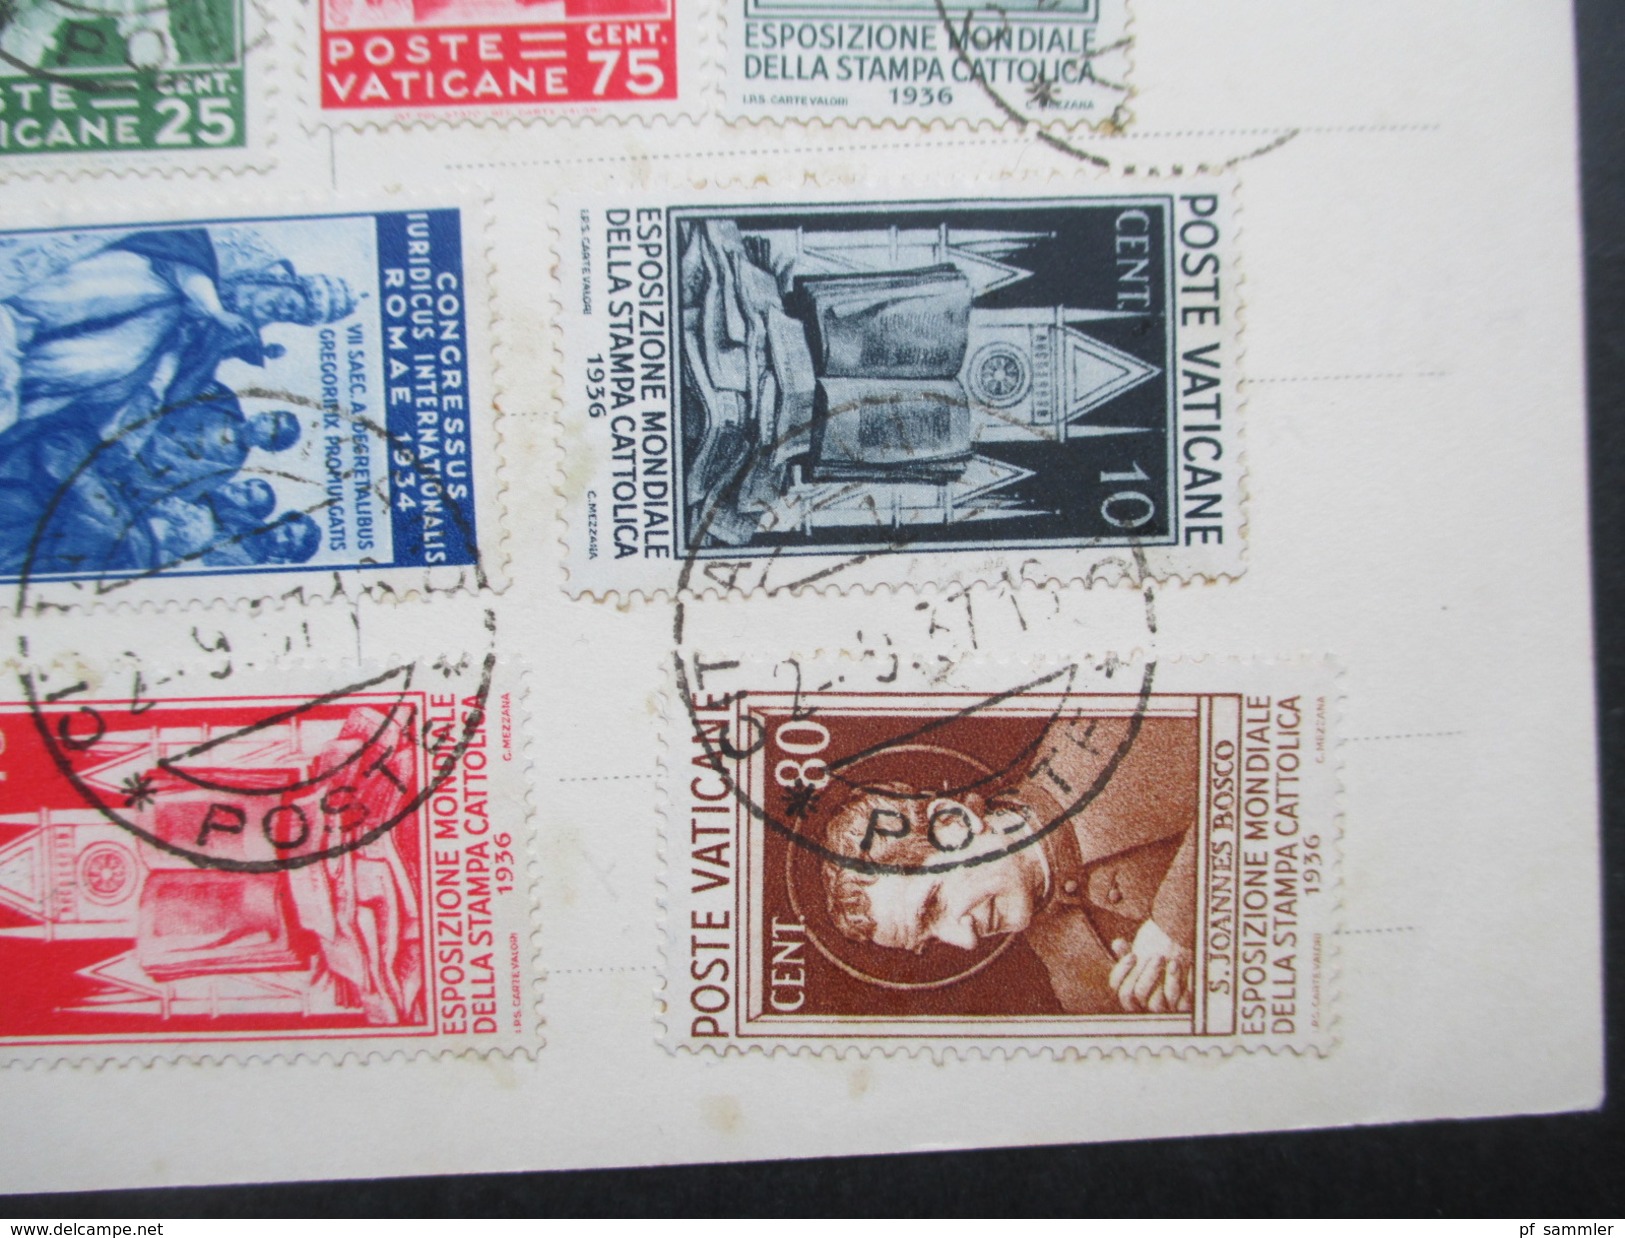 Vatikan 1937 Postkarte Michel Nr. 45 - 50 und 52 + 54 - 57 hoher Katalogwert! Bild und Unterschrift des Pabst.